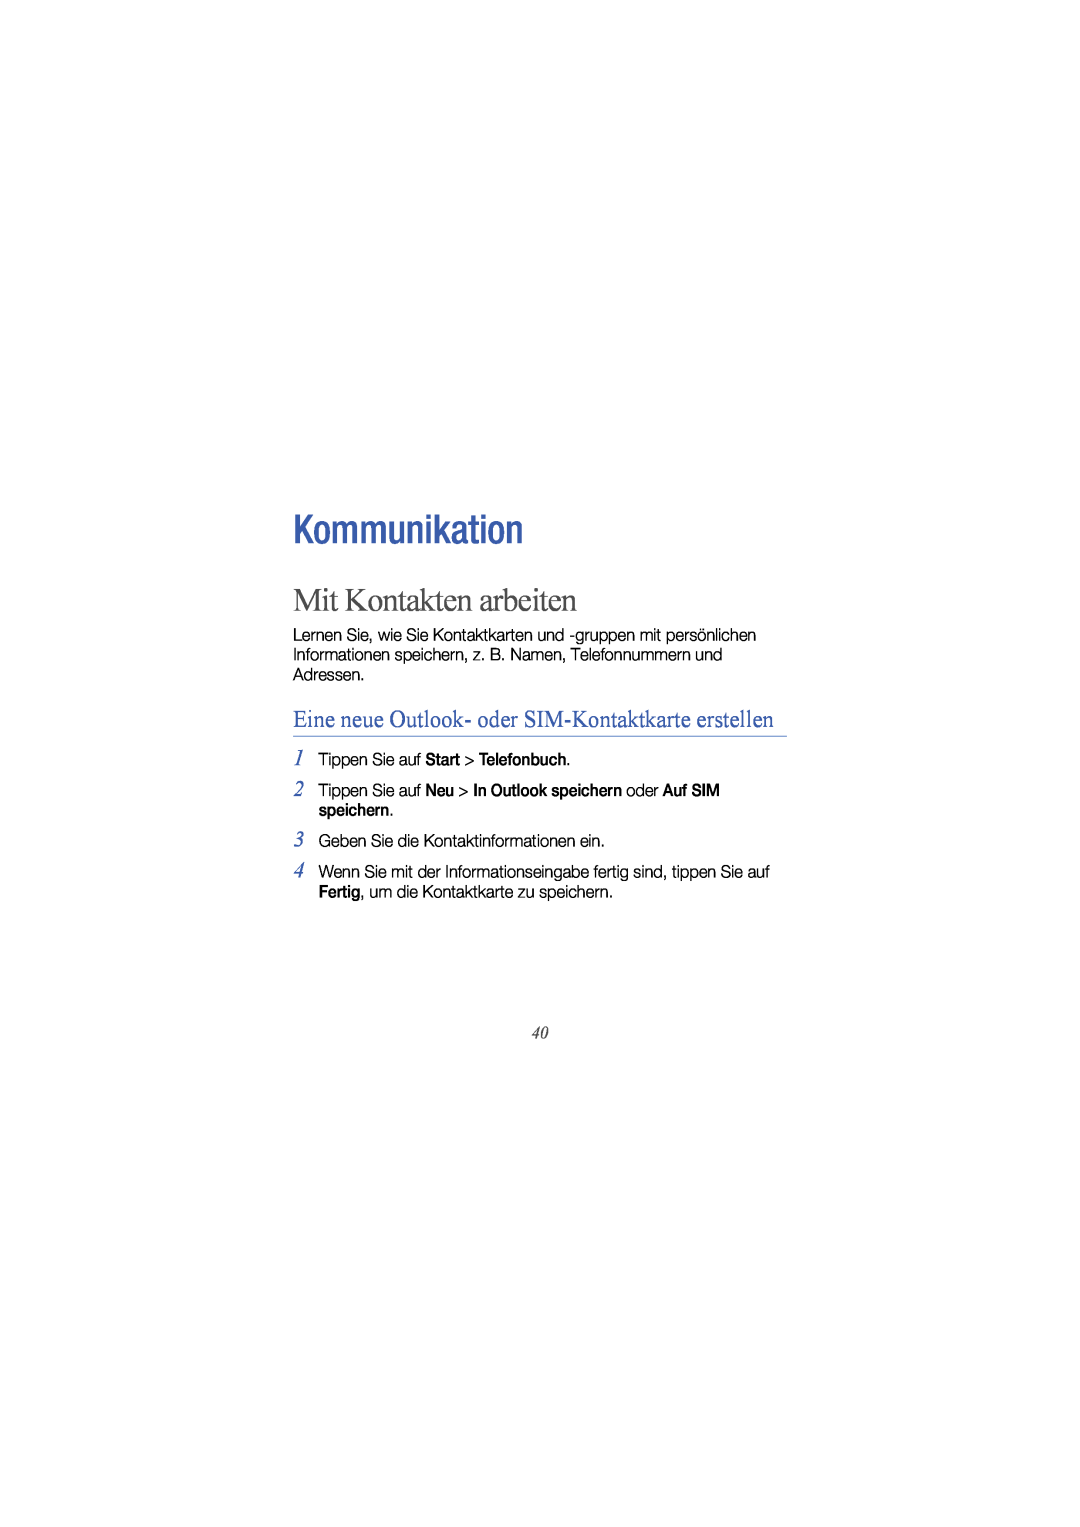 Samsung GT-I8000KKETUR manual Kommunikation, Mit Kontakten arbeiten, Eine neue Outlook- oder SIM-Kontaktkarte erstellen 